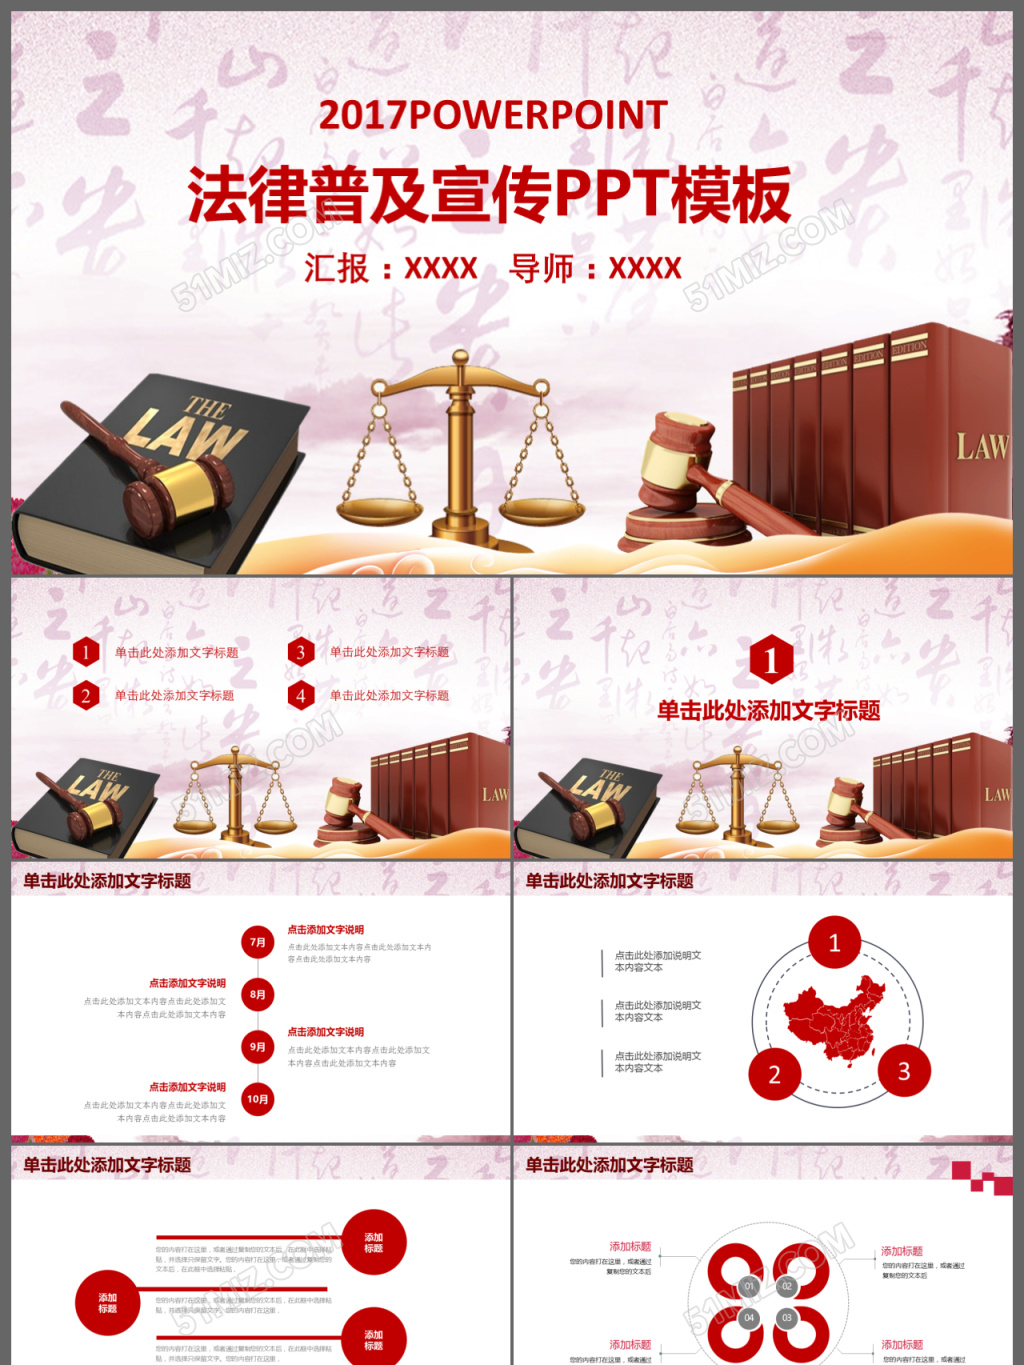 高清法律图片素材 - 素材公社 tooopen.com